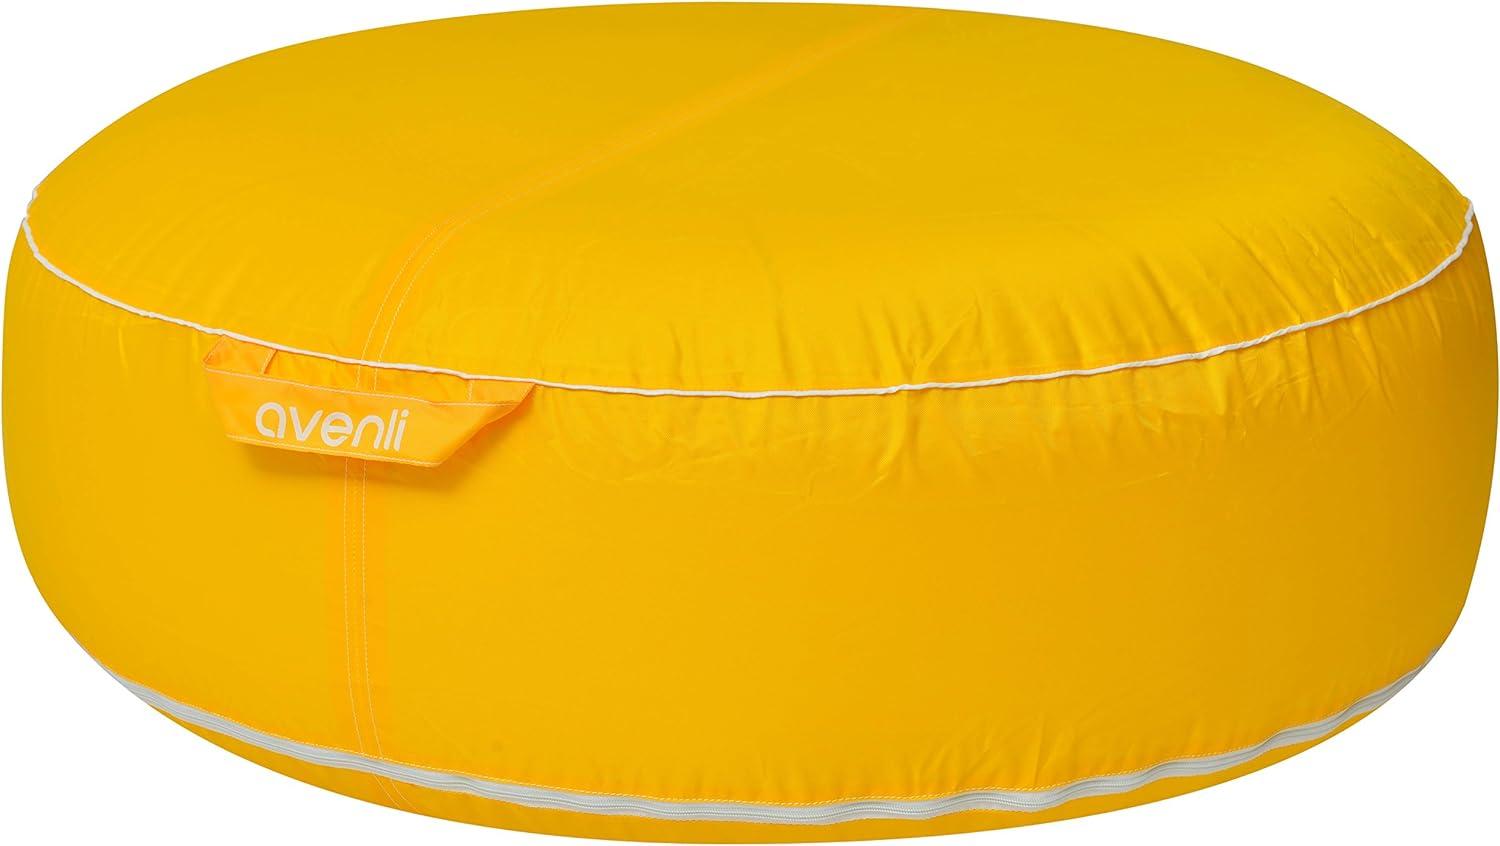 Jilong Campingstuhl Avenli Pouf Sitzkissen 98x38cm Sitzsack aufblasbar gewebeverstärkter Bezug wasserfest Outdoor gelb Bild 1